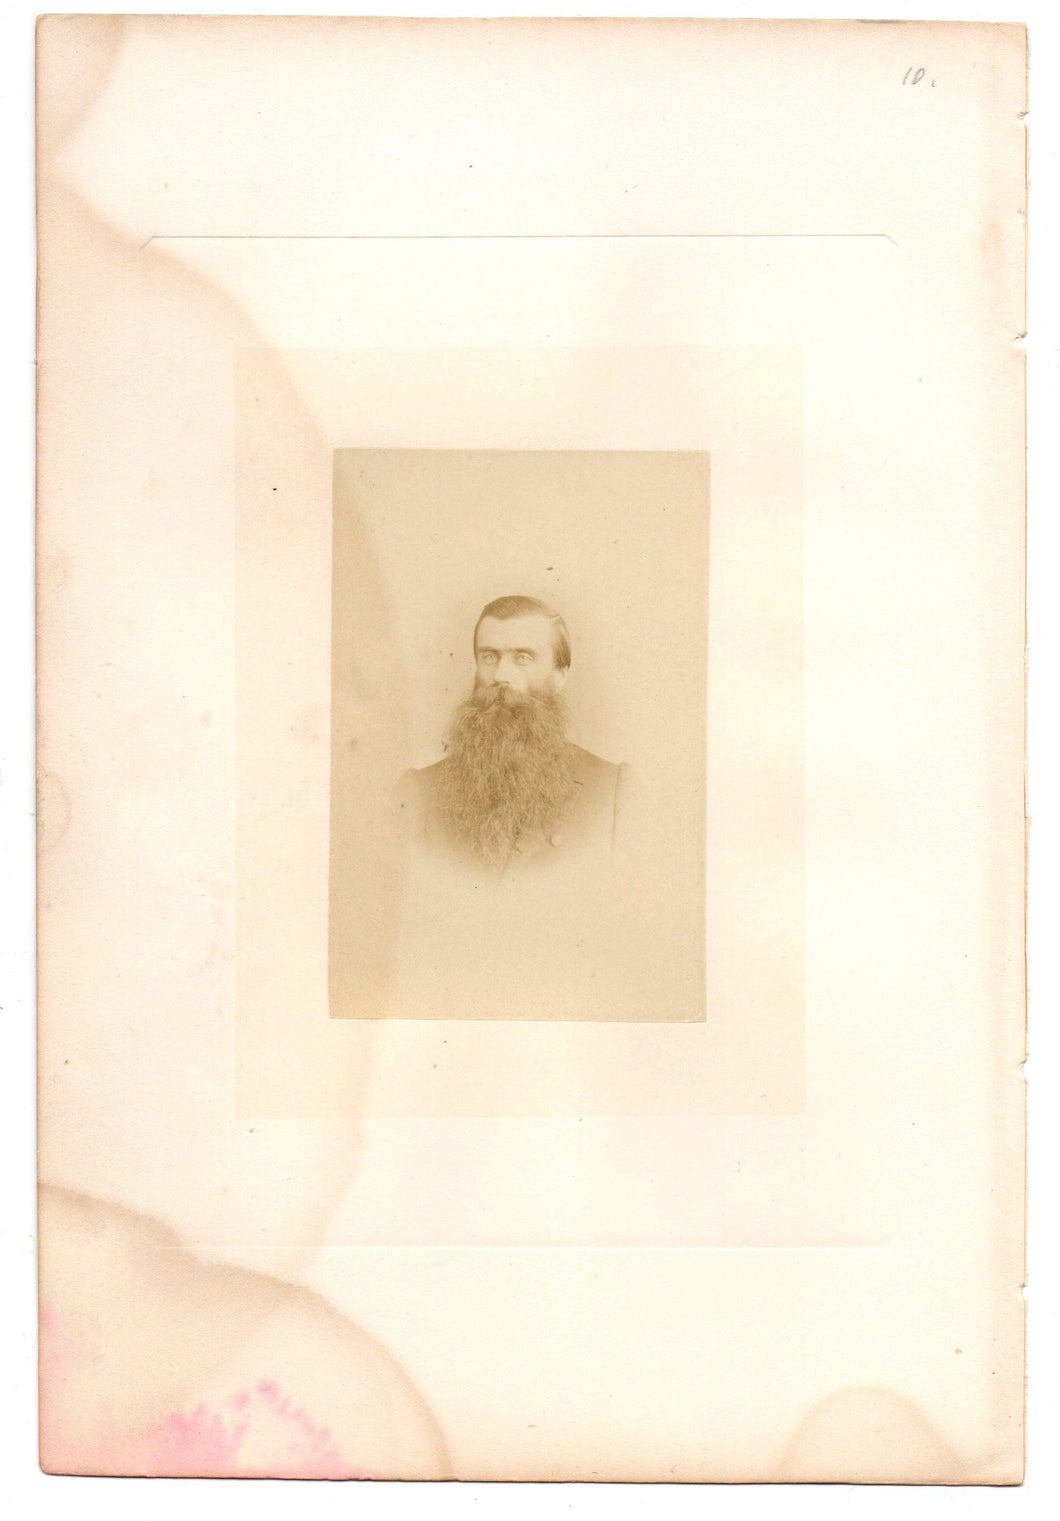 Photo of Hon. F. Evanturel, M.P.P.